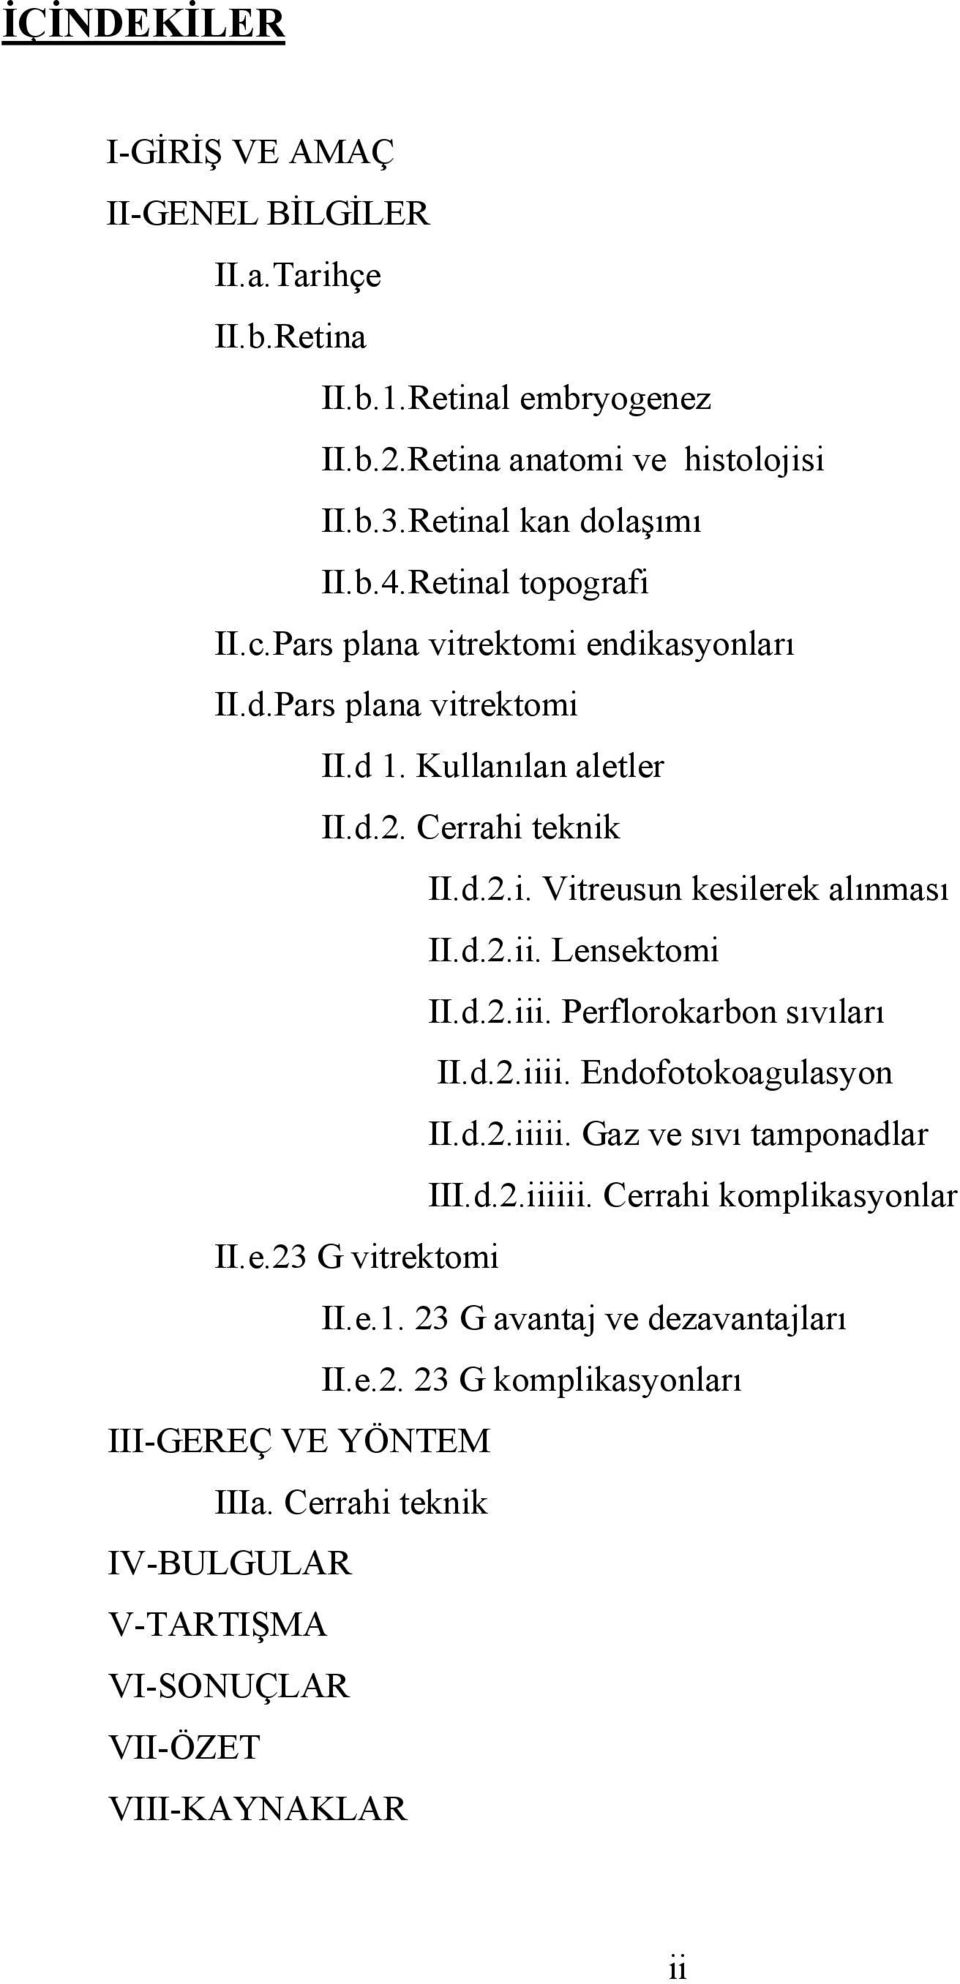 d.2.ii. Lensektomi II.d.2.iii. Perflorokarbon sıvıları II.d.2.iiii. Endofotokoagulasyon II.d.2.iiiii. Gaz ve sıvı tamponadlar III.d.2.iiiiii. Cerrahi komplikasyonlar II.e.23 G vitrektomi II.